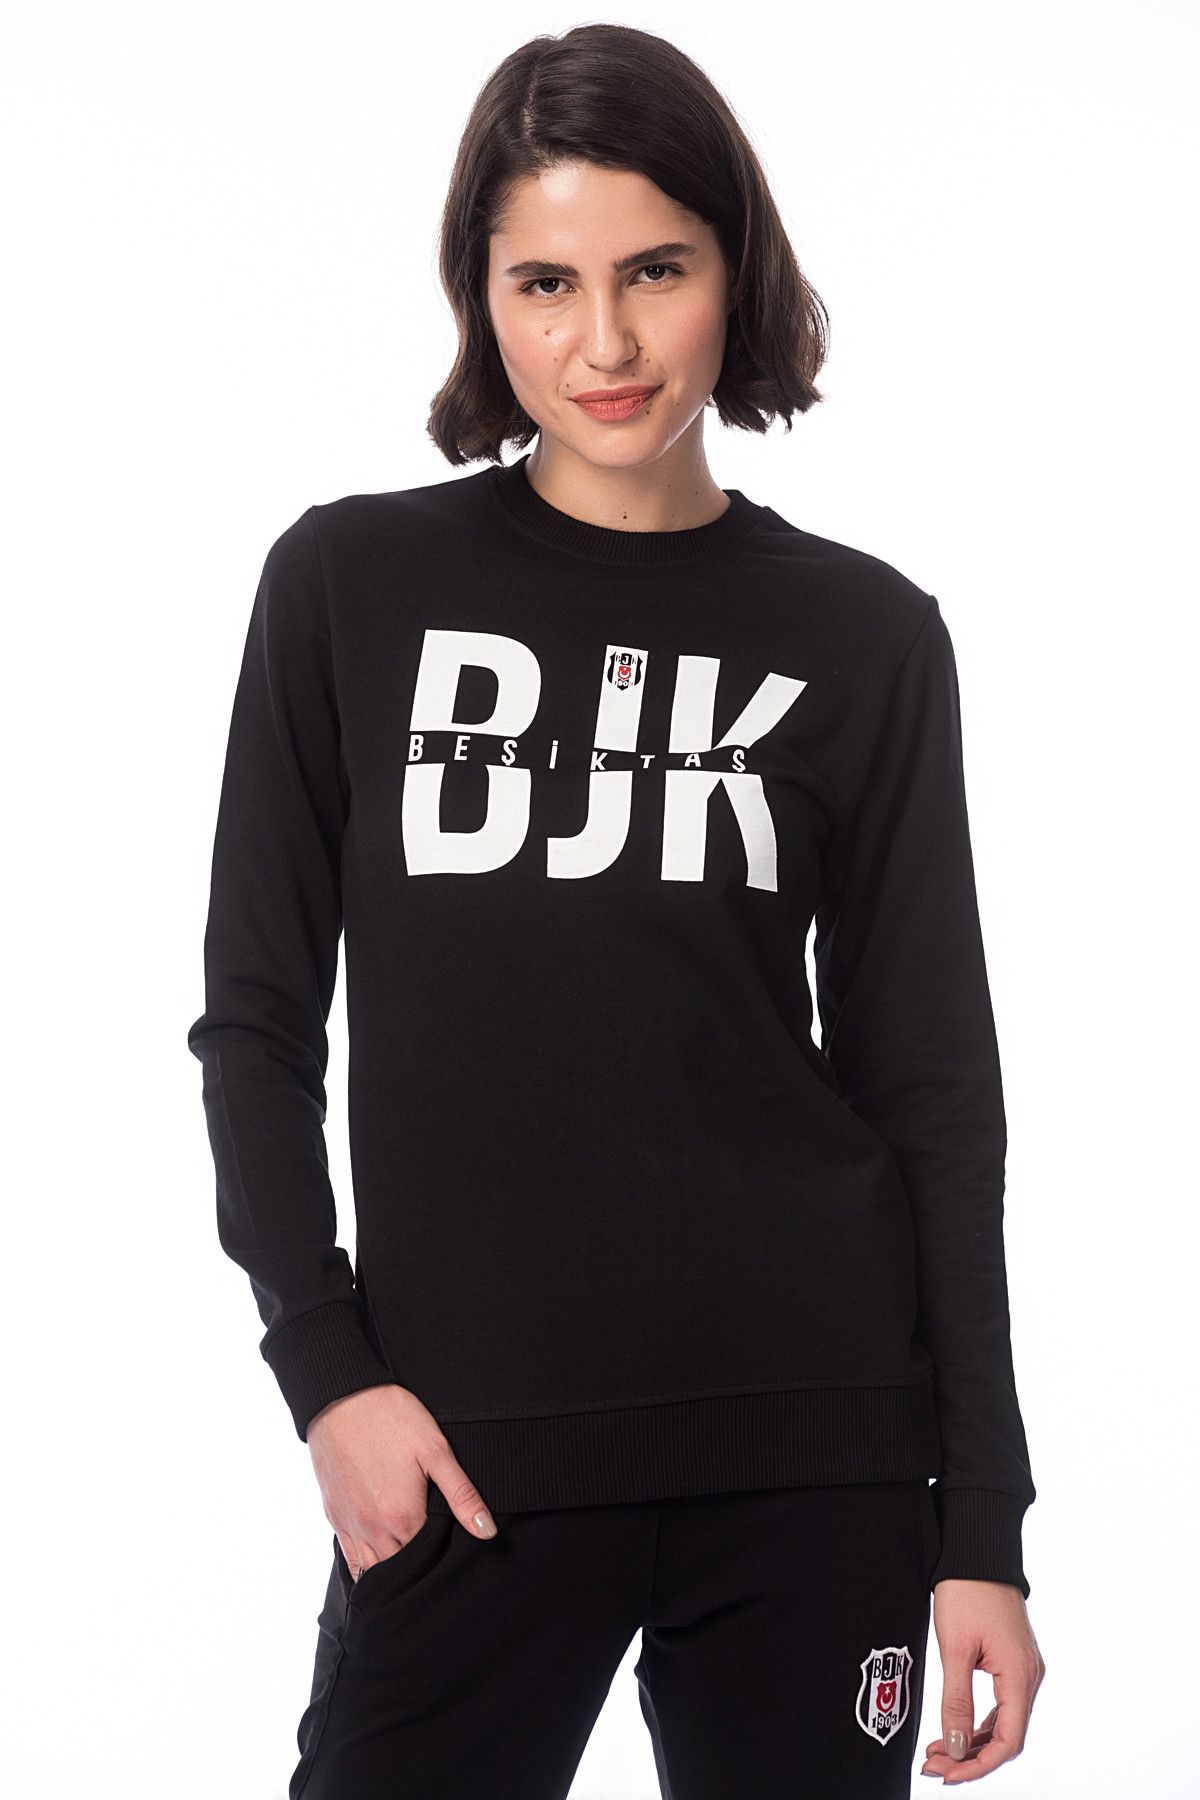 Beşiktaş Kadın Siyah Sweatshirt - 8KESB05001